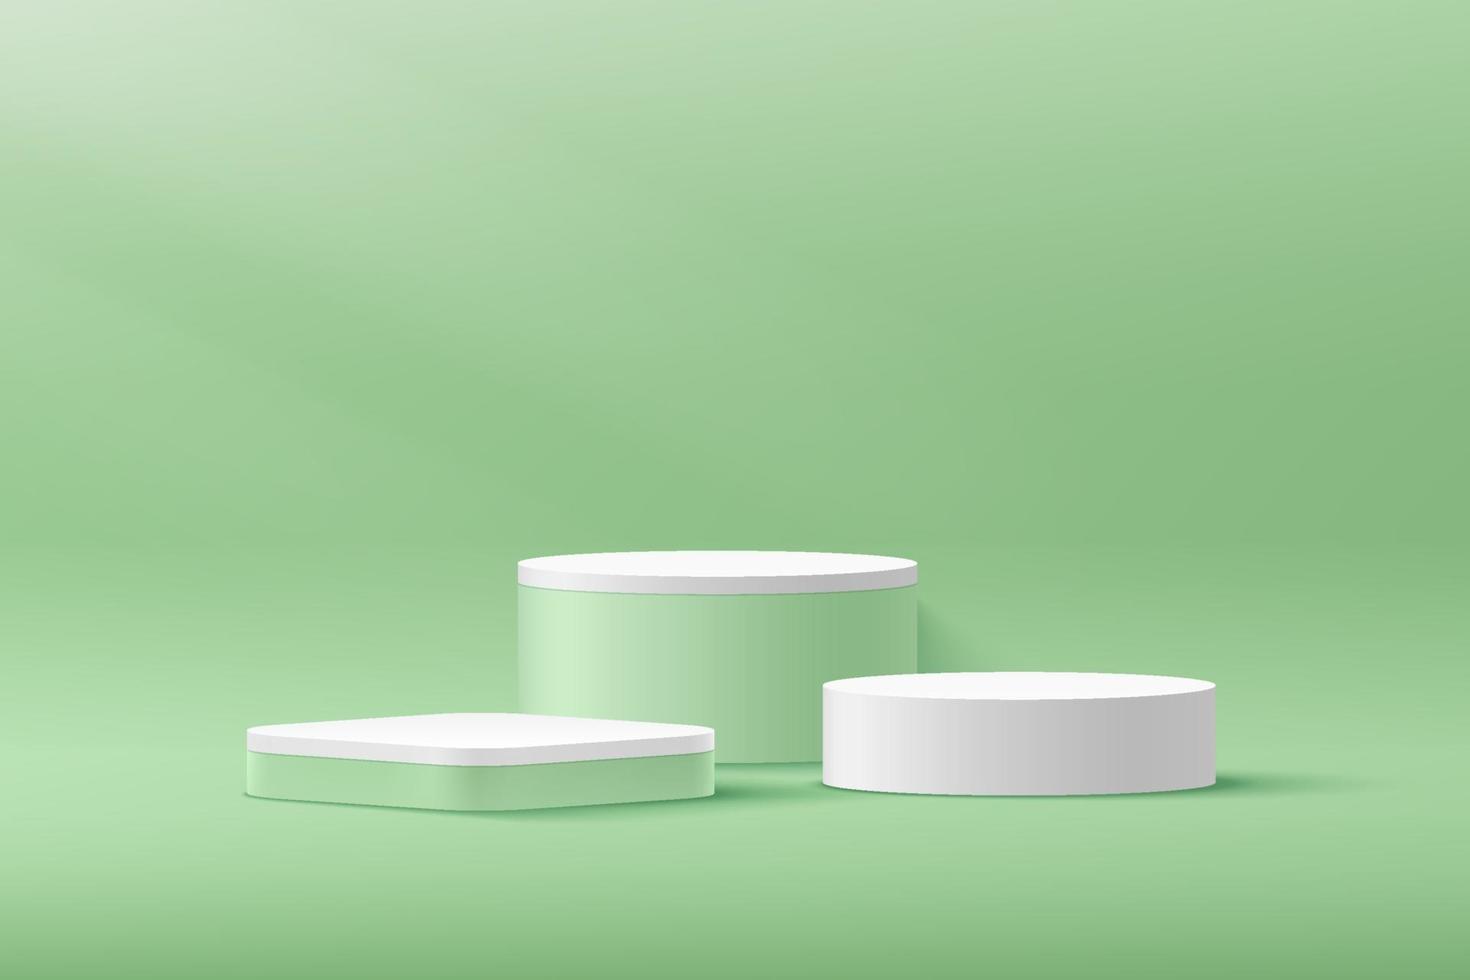 cylindre blanc moderne, podium de piédestal de cube vert, salle vide vert clair avec ombre de fenêtre. vecteur abstrait rendant la forme 3d, présentation d'affichage de produits cosmétiques. scène minimale de la chambre pastel.